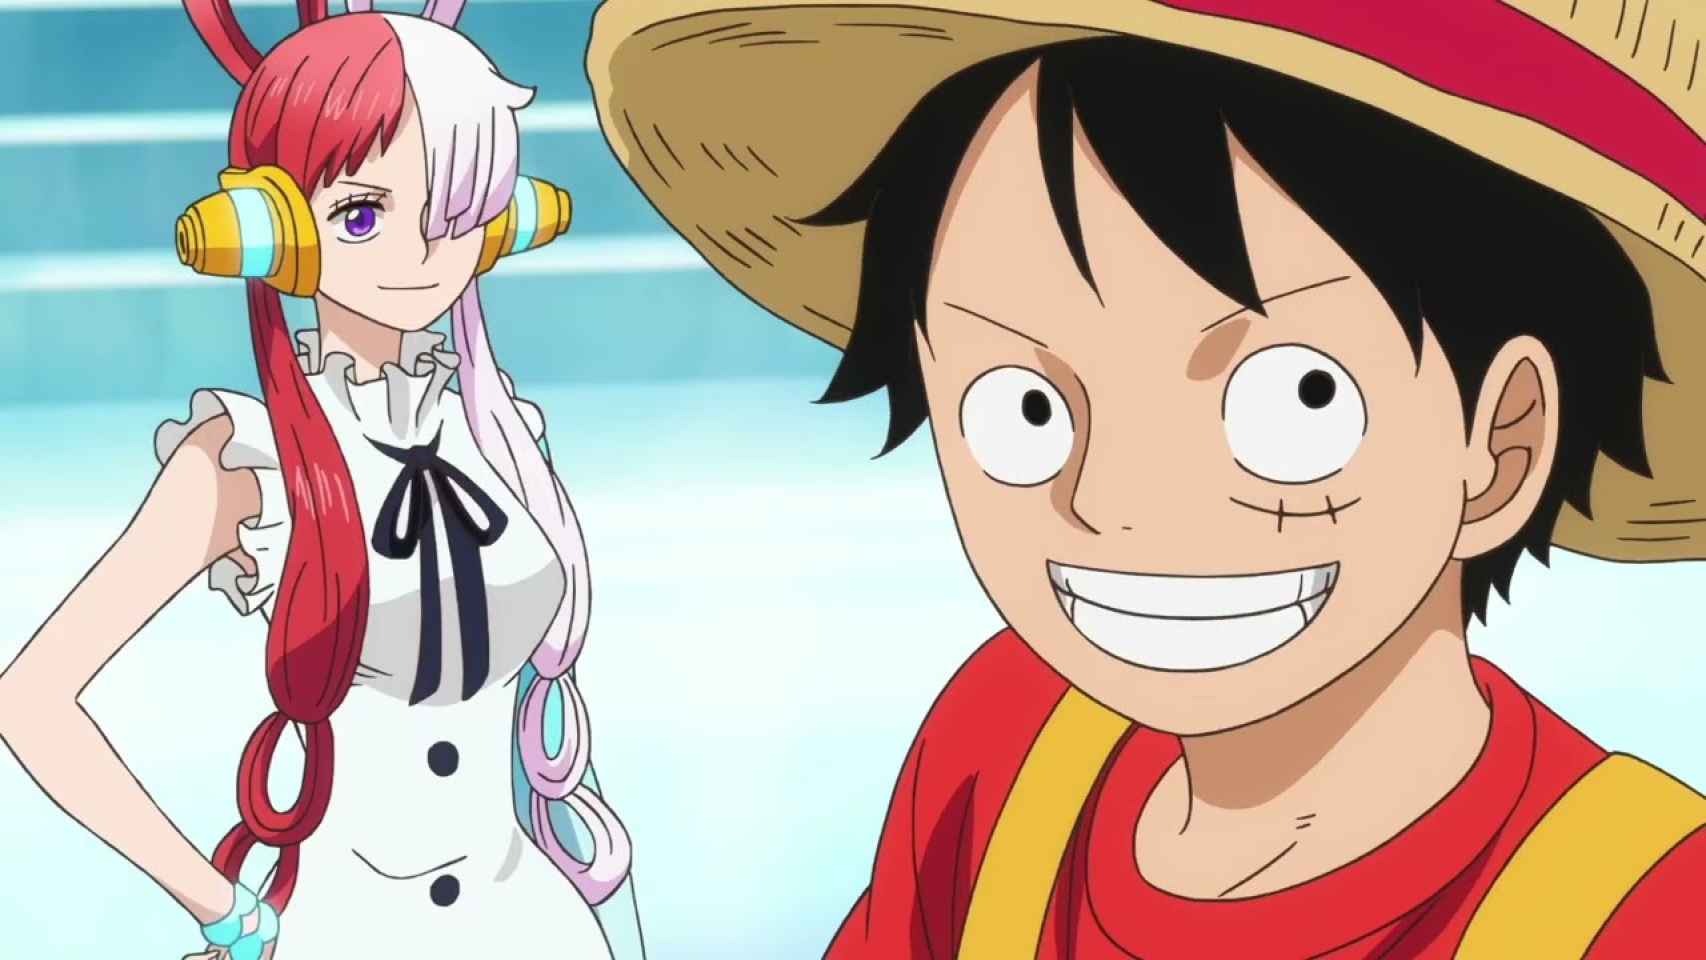 Goro Taniguchi: Sé cómo será el final de 'One Piece', pero no lo puedo desvelar